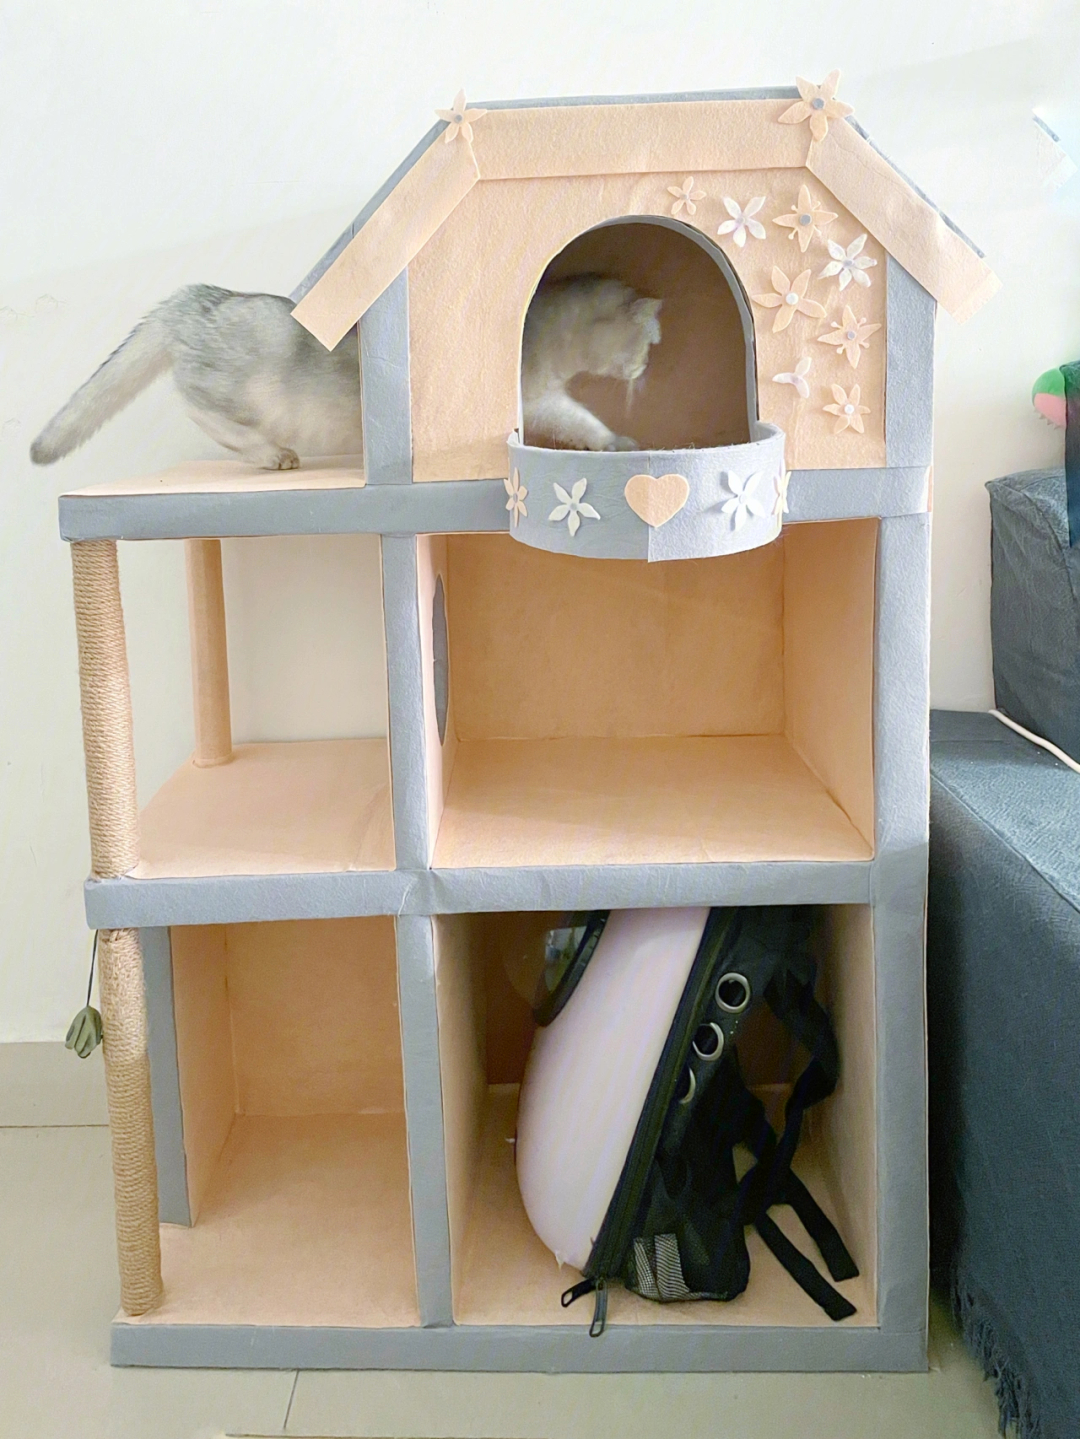 用纸箱给猫做了个猫窝猫爬架,最下面一层用来放猫用品,上面两层才是猫